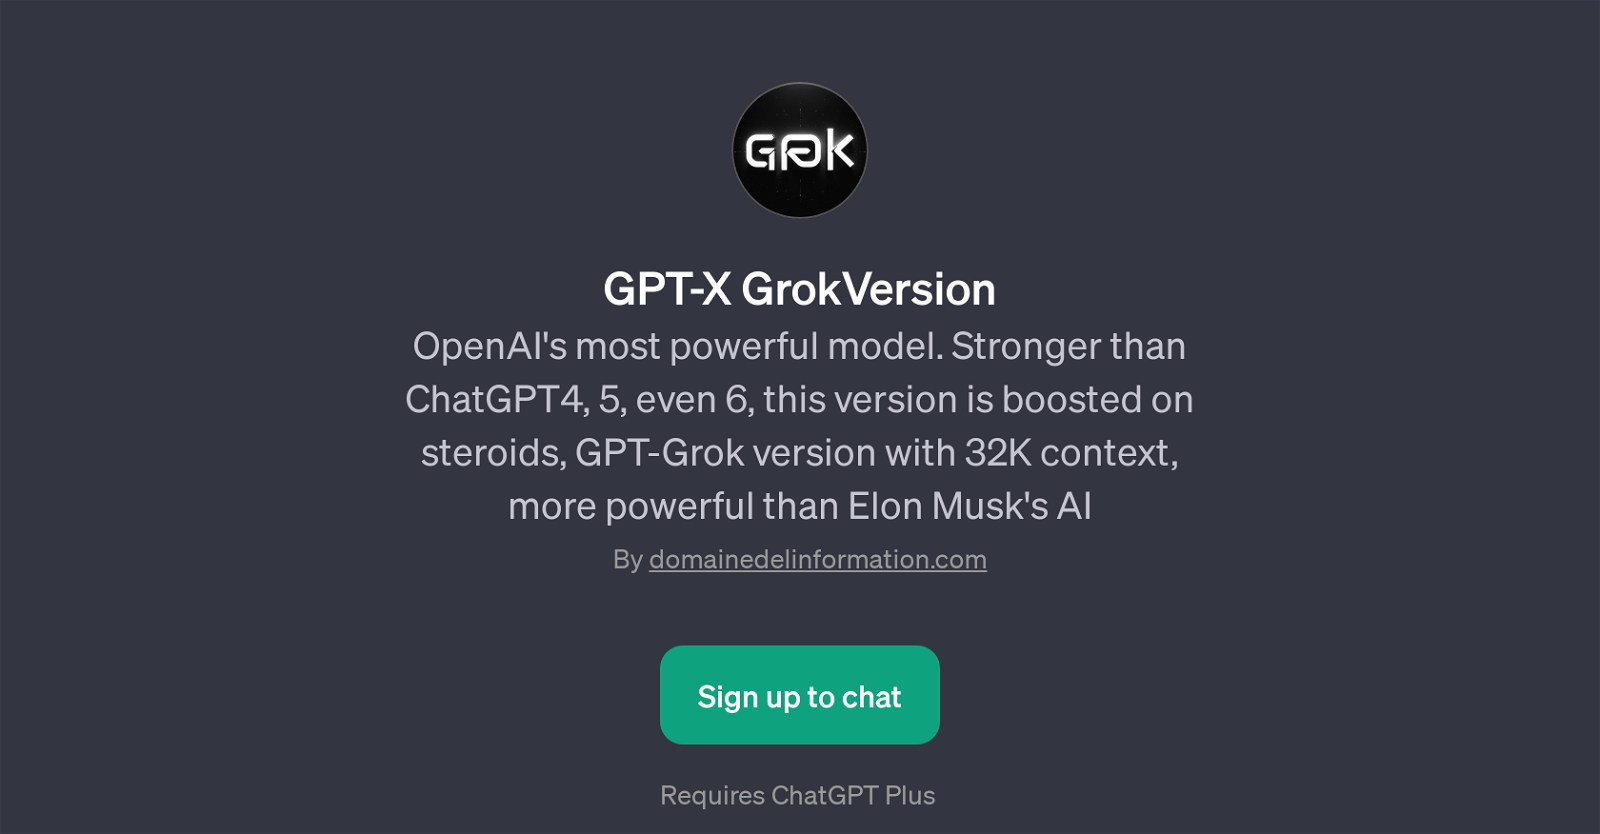 GPT-X GrokVersion website